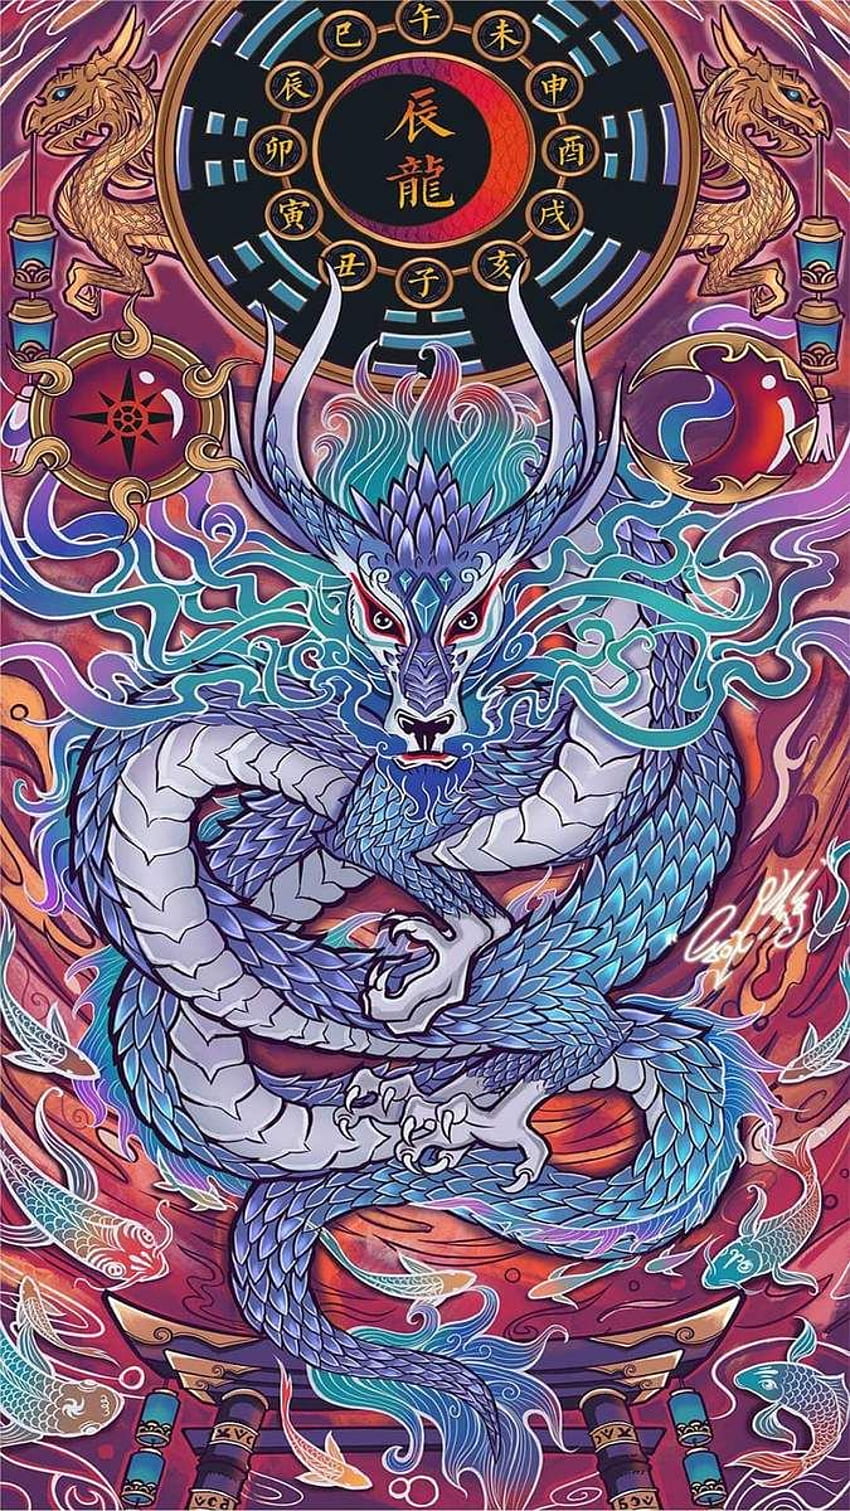 Nghệ thuật rồng (Dragon artwork): Nghệ thuật Rồng là một trong những phong cách vẽ tuyệt đẹp nhất và tinh tế nhất trong nghệ thuật hiện đại. Hình ảnh rồng trong nghệ thuật được thiết kế với nhiều màu sắc, họa tiết và đường nét trang trí tinh tế. Nếu bạn yêu thích nghệ thuật và đang tìm kiếm bức tranh độc đáo, hãy xem những hình ảnh nghệ thuật rồng để thấy sự tinh tế và đẳng cấp của nó.